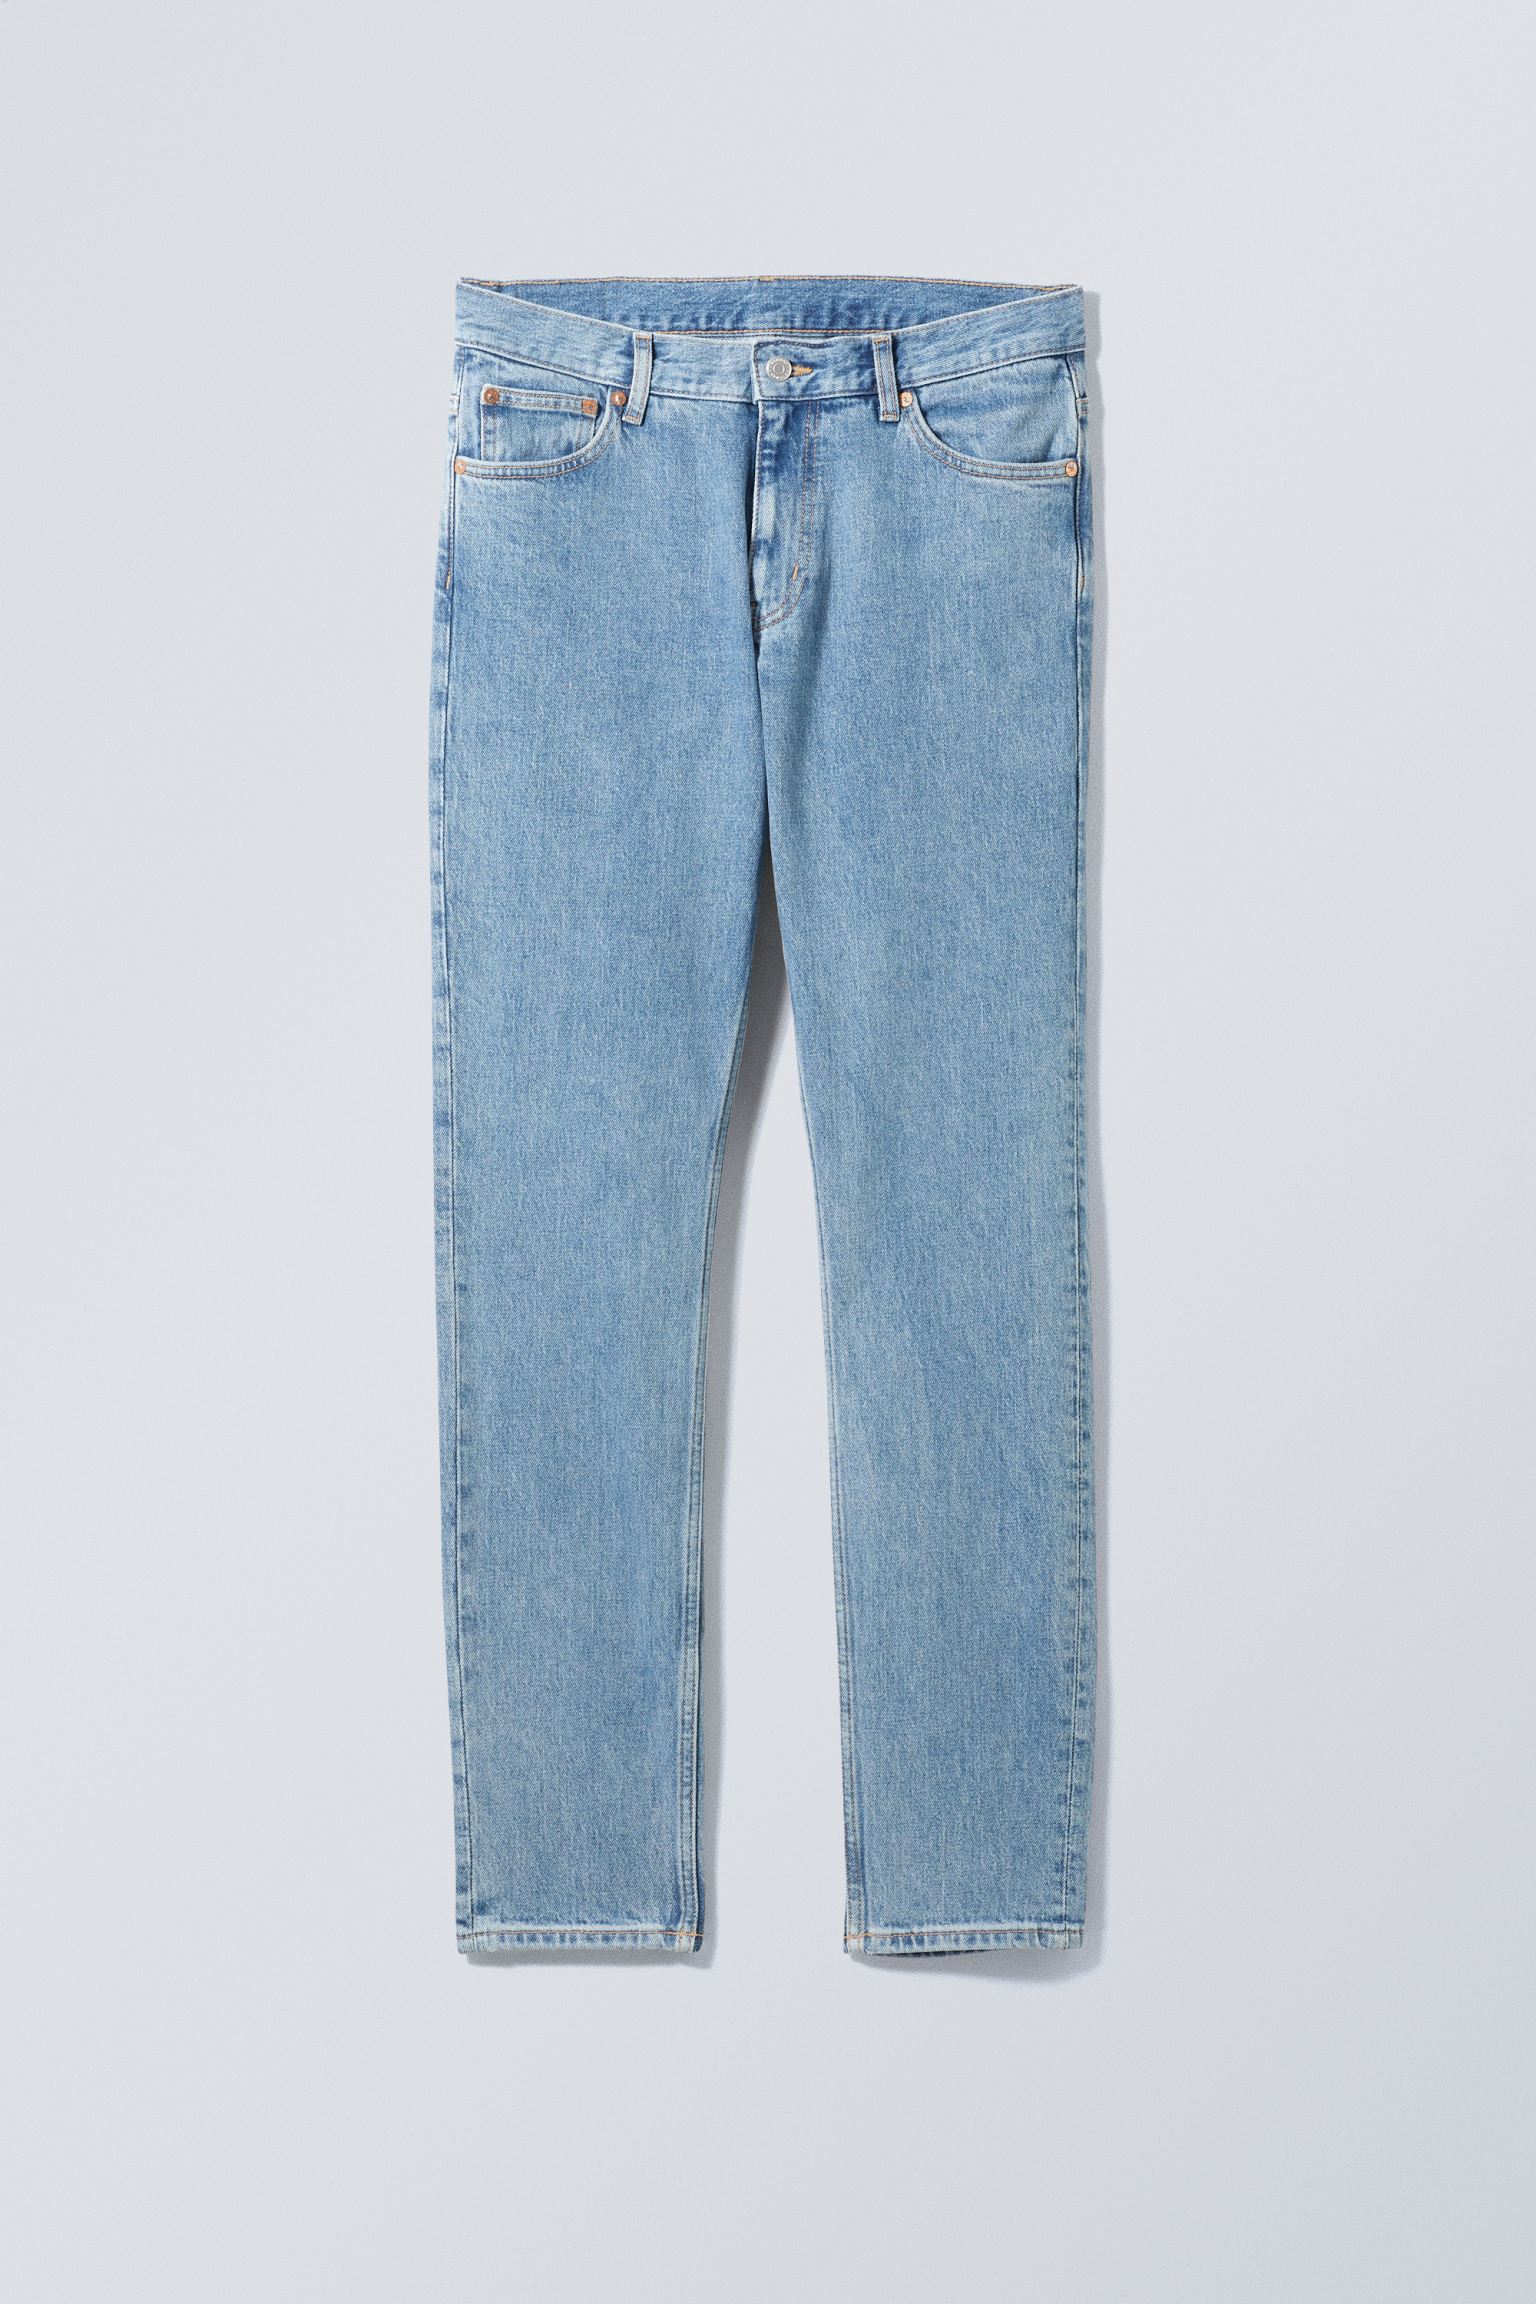 Weekday Schmale Jeans Sunday mit konisch zulaufendem Bein Tiefblau, Skinny in Größe 30/32. Farbe: Cerulean blue von Weekday